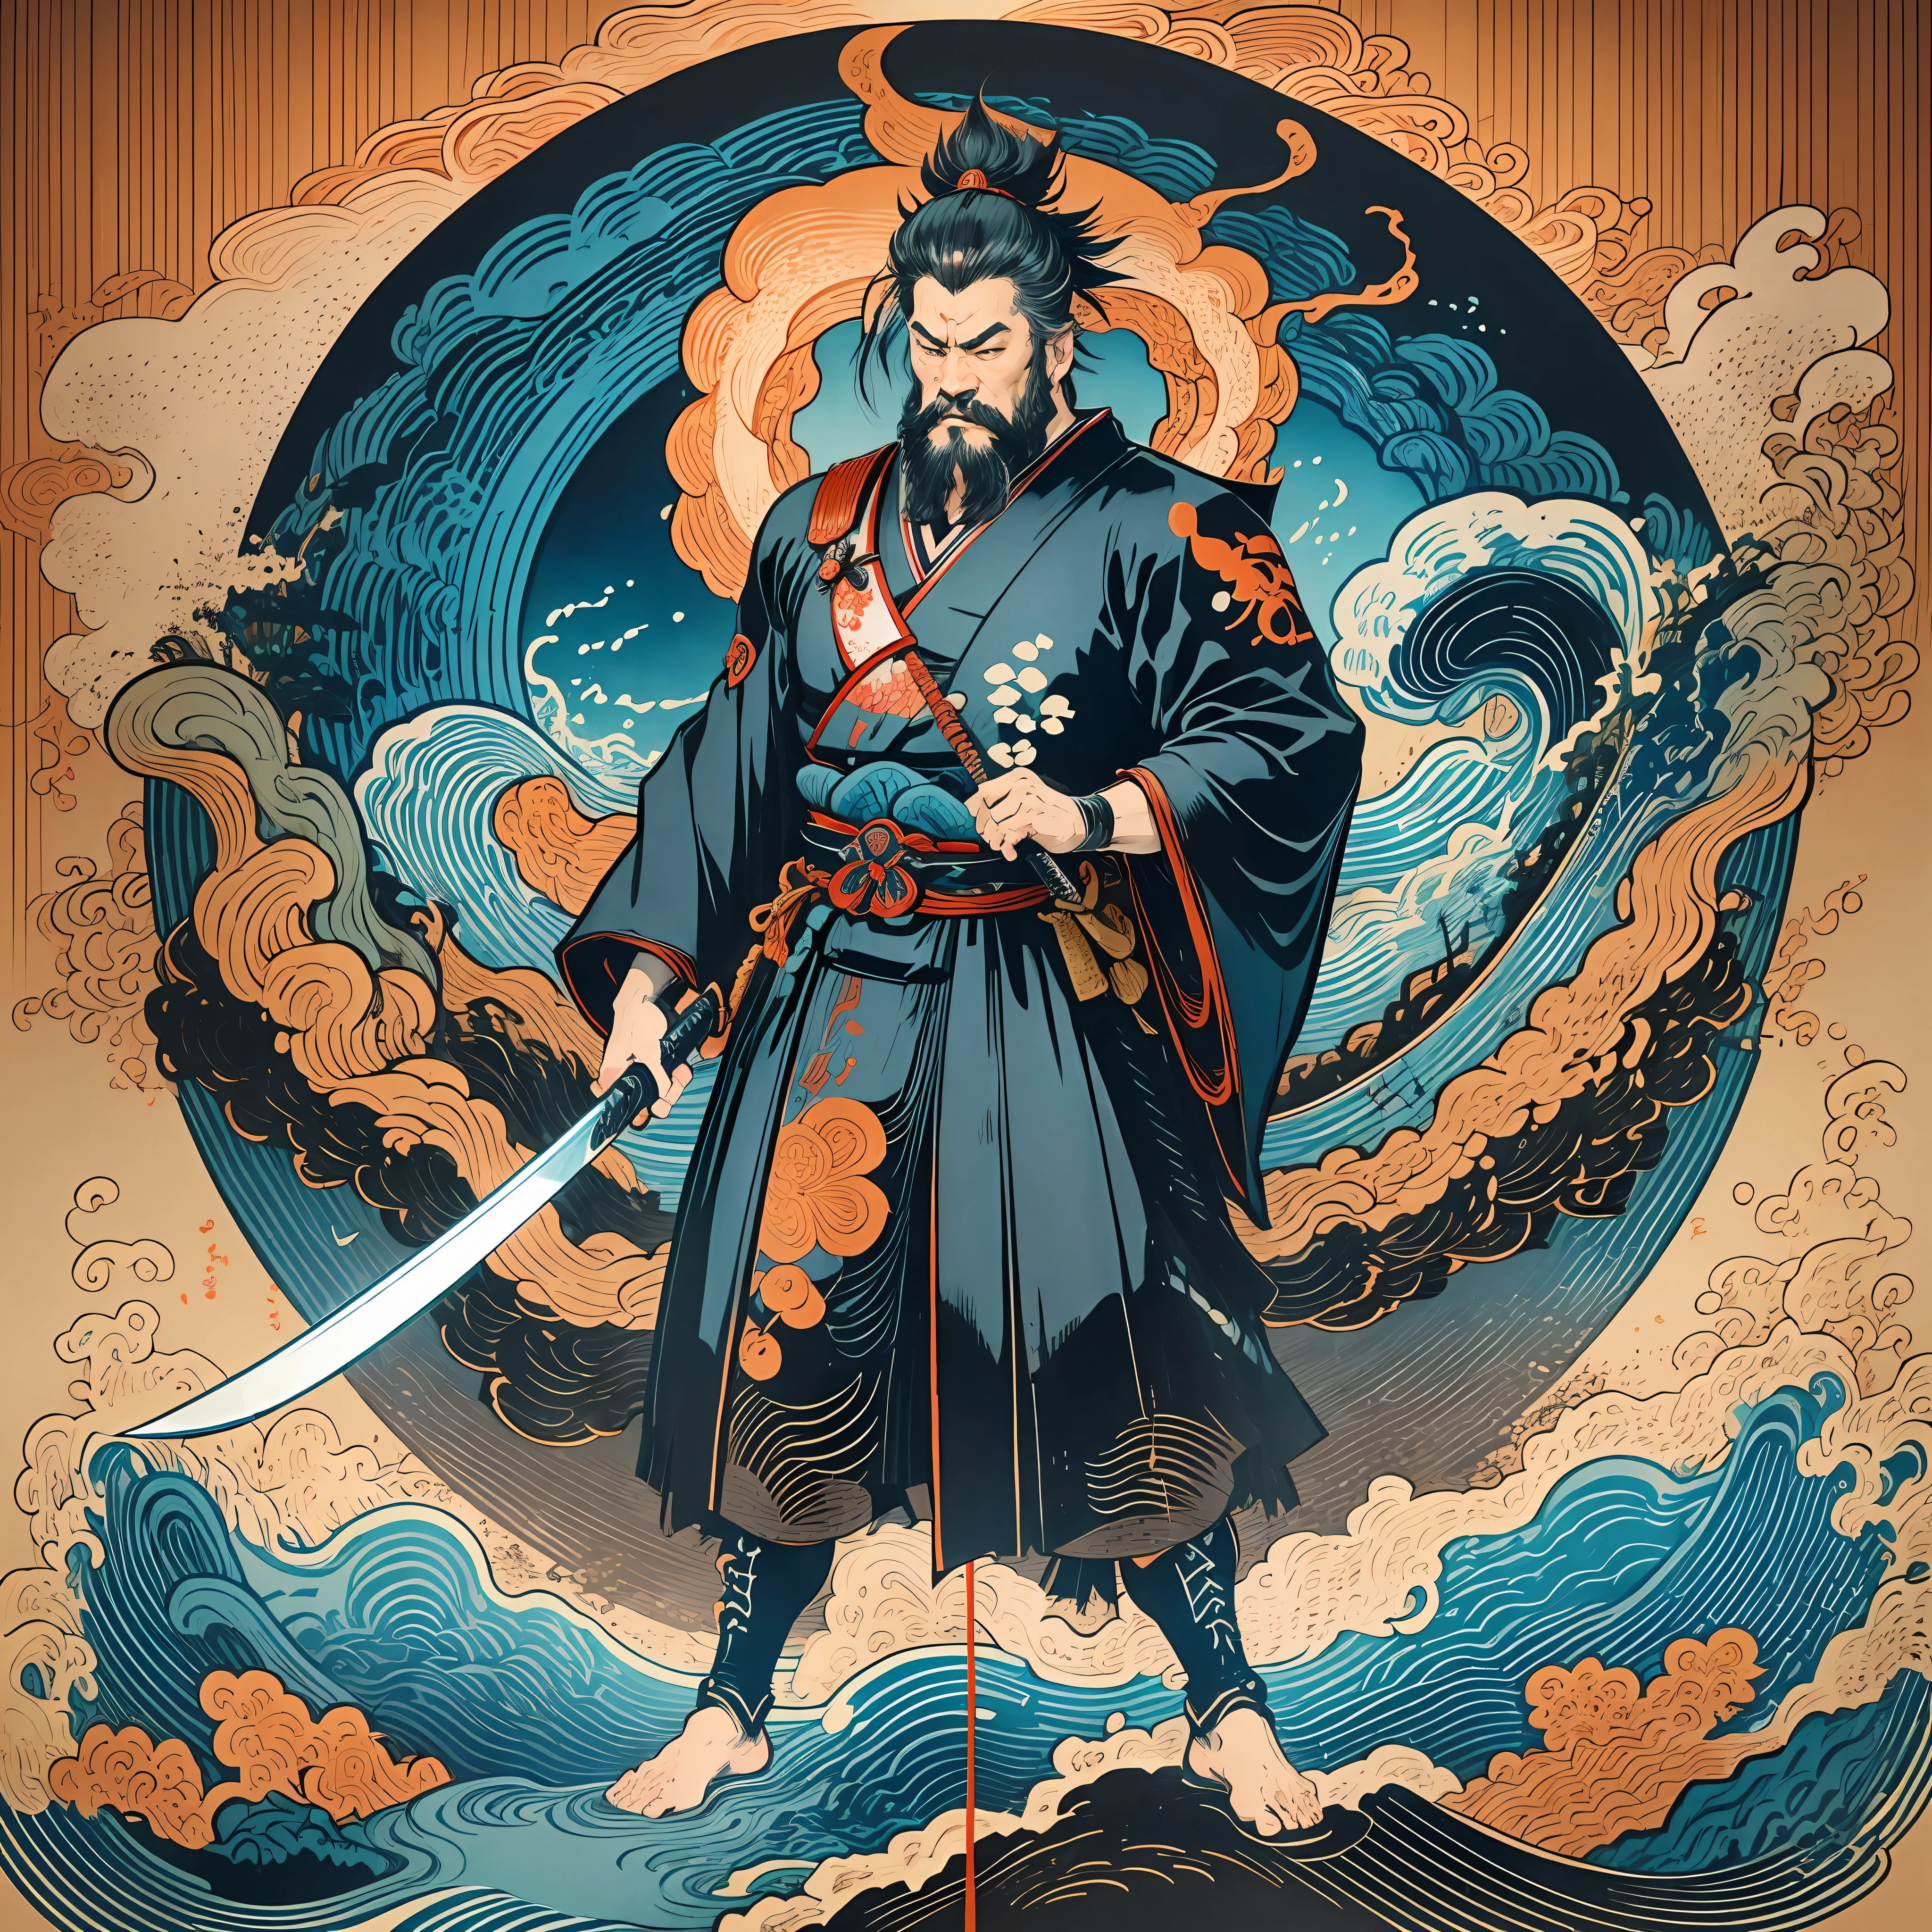 Il s&#39;agit d&#39;une peinture corporelle complète aux couleurs naturelles avec des dessins au trait de style Katsushika Hokusai.. L&#39;épéiste Miyamoto Musashi a un grand corps comme un homme fort. Samouraï du Japon. Avec une expression de détermination digne mais virile, il affronte les mauvais esprits. Il a les cheveux noirs courts et une coupe courte, barbe taillée. Le haut de son corps est recouvert d&#39;un kimono noir et son hakama arrive jusqu&#39;aux genoux.. Dans sa main droite, il tient une épée japonaise avec une partie d&#39;épée plus longue.. Dans la plus haute qualité, chef-d&#39;œuvre haute résolution de style ukiyo-e, éclairs et flammes tourbillonnantes. Parmi eux, Miyamoto Musashi est debout, le dos droit, face à l&#39;avant.